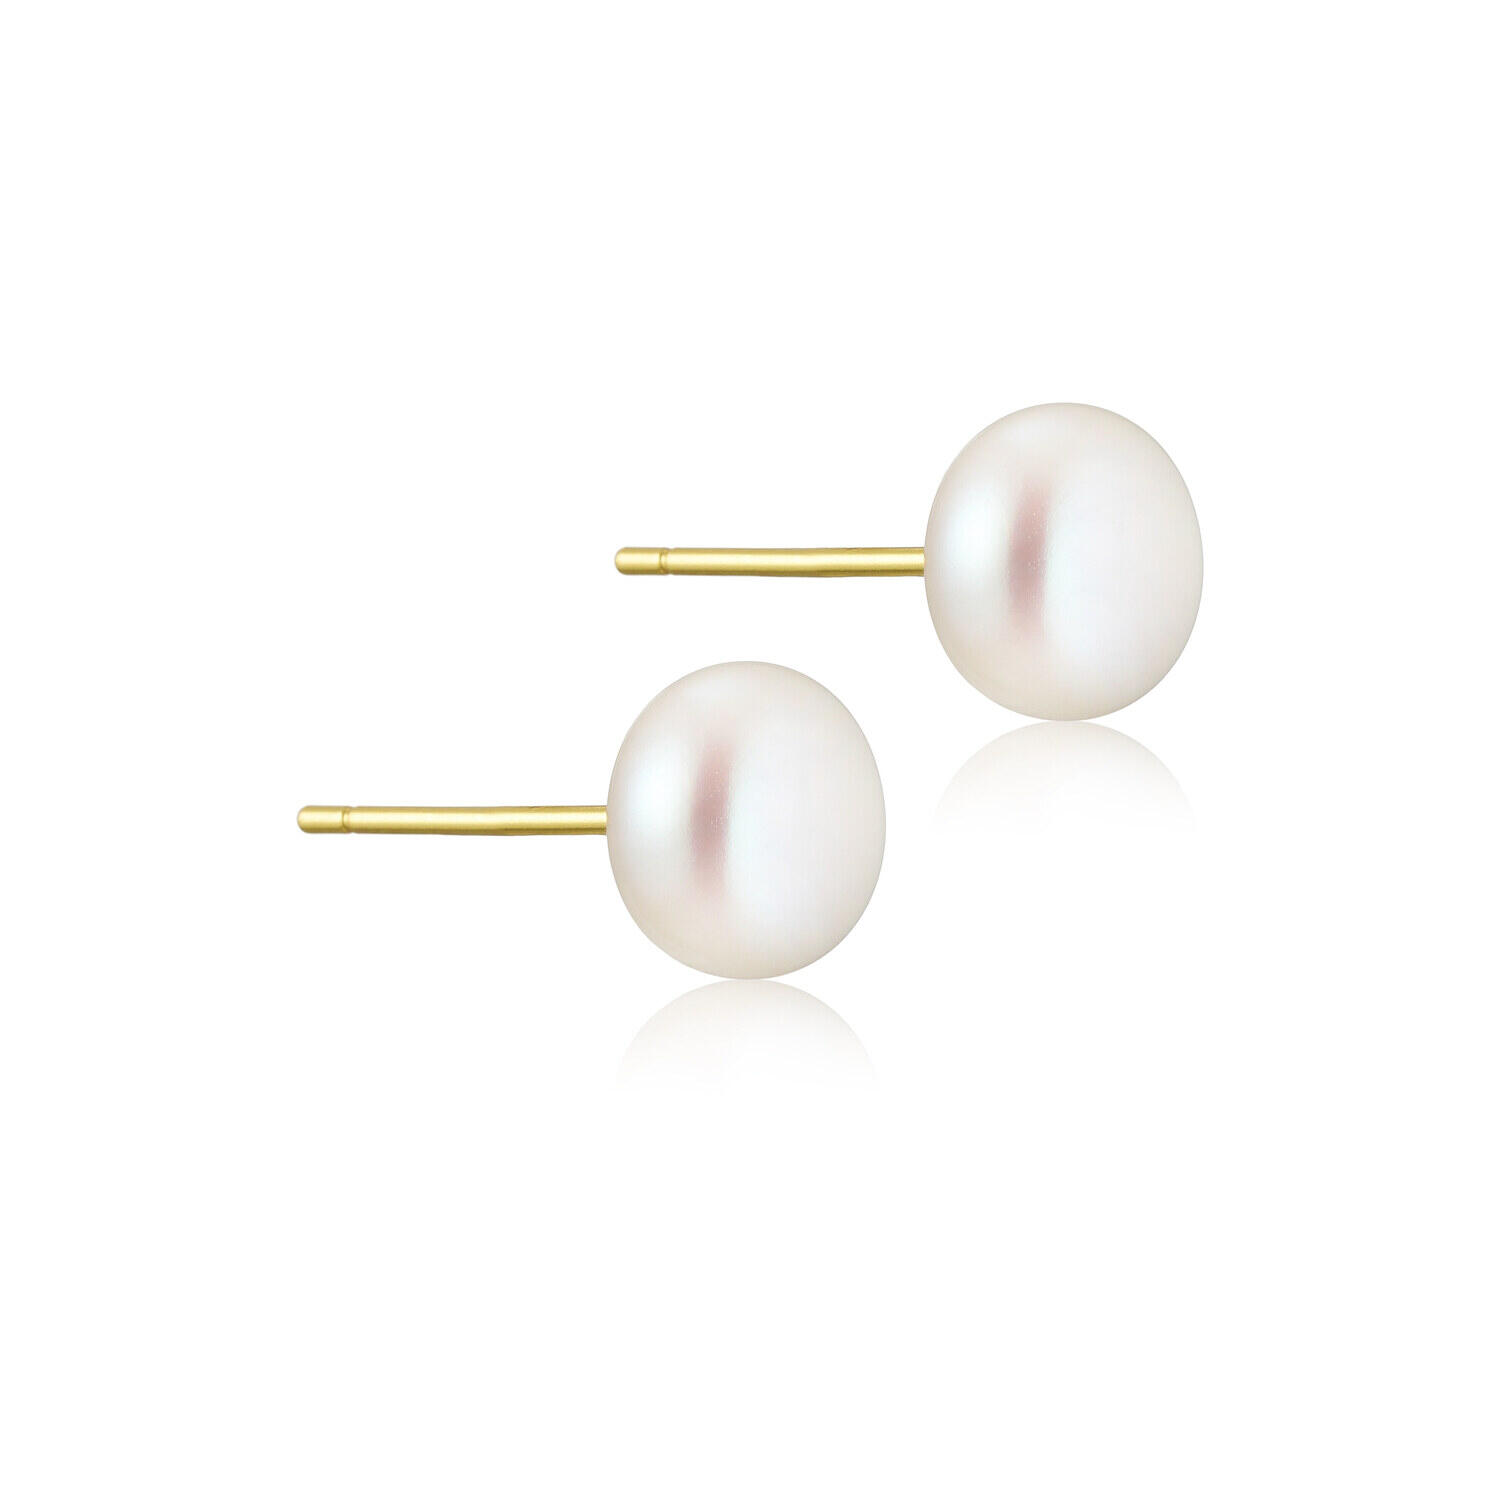 Se Perlestik perleørering guldbelagt med oval perle - 1 stk (enkel) hos By Cecilie Hother